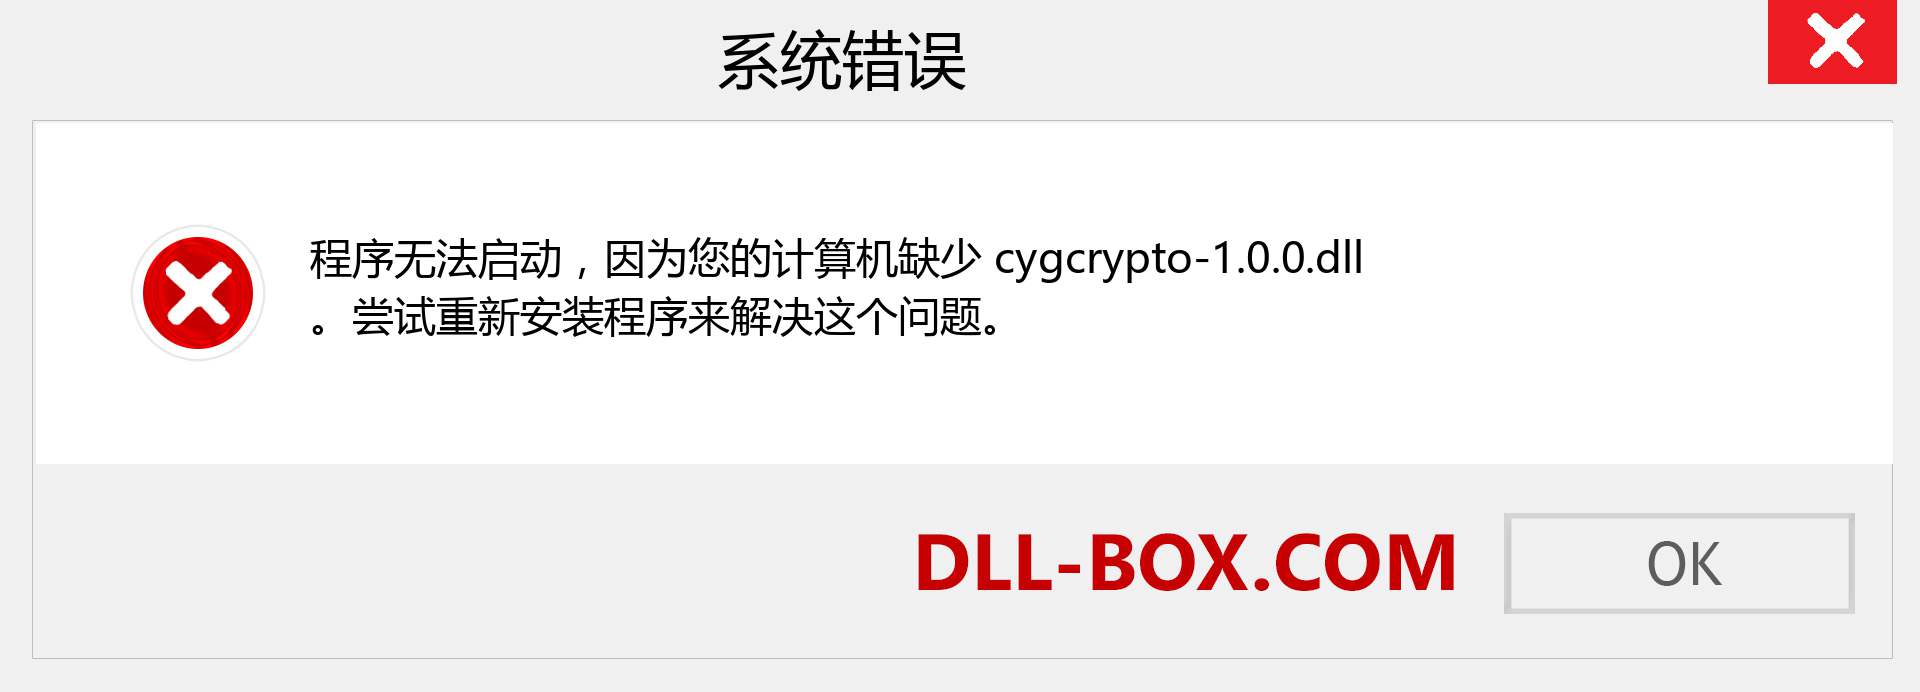 cygcrypto-1.0.0.dll 文件丢失？。 适用于 Windows 7、8、10 的下载 - 修复 Windows、照片、图像上的 cygcrypto-1.0.0 dll 丢失错误